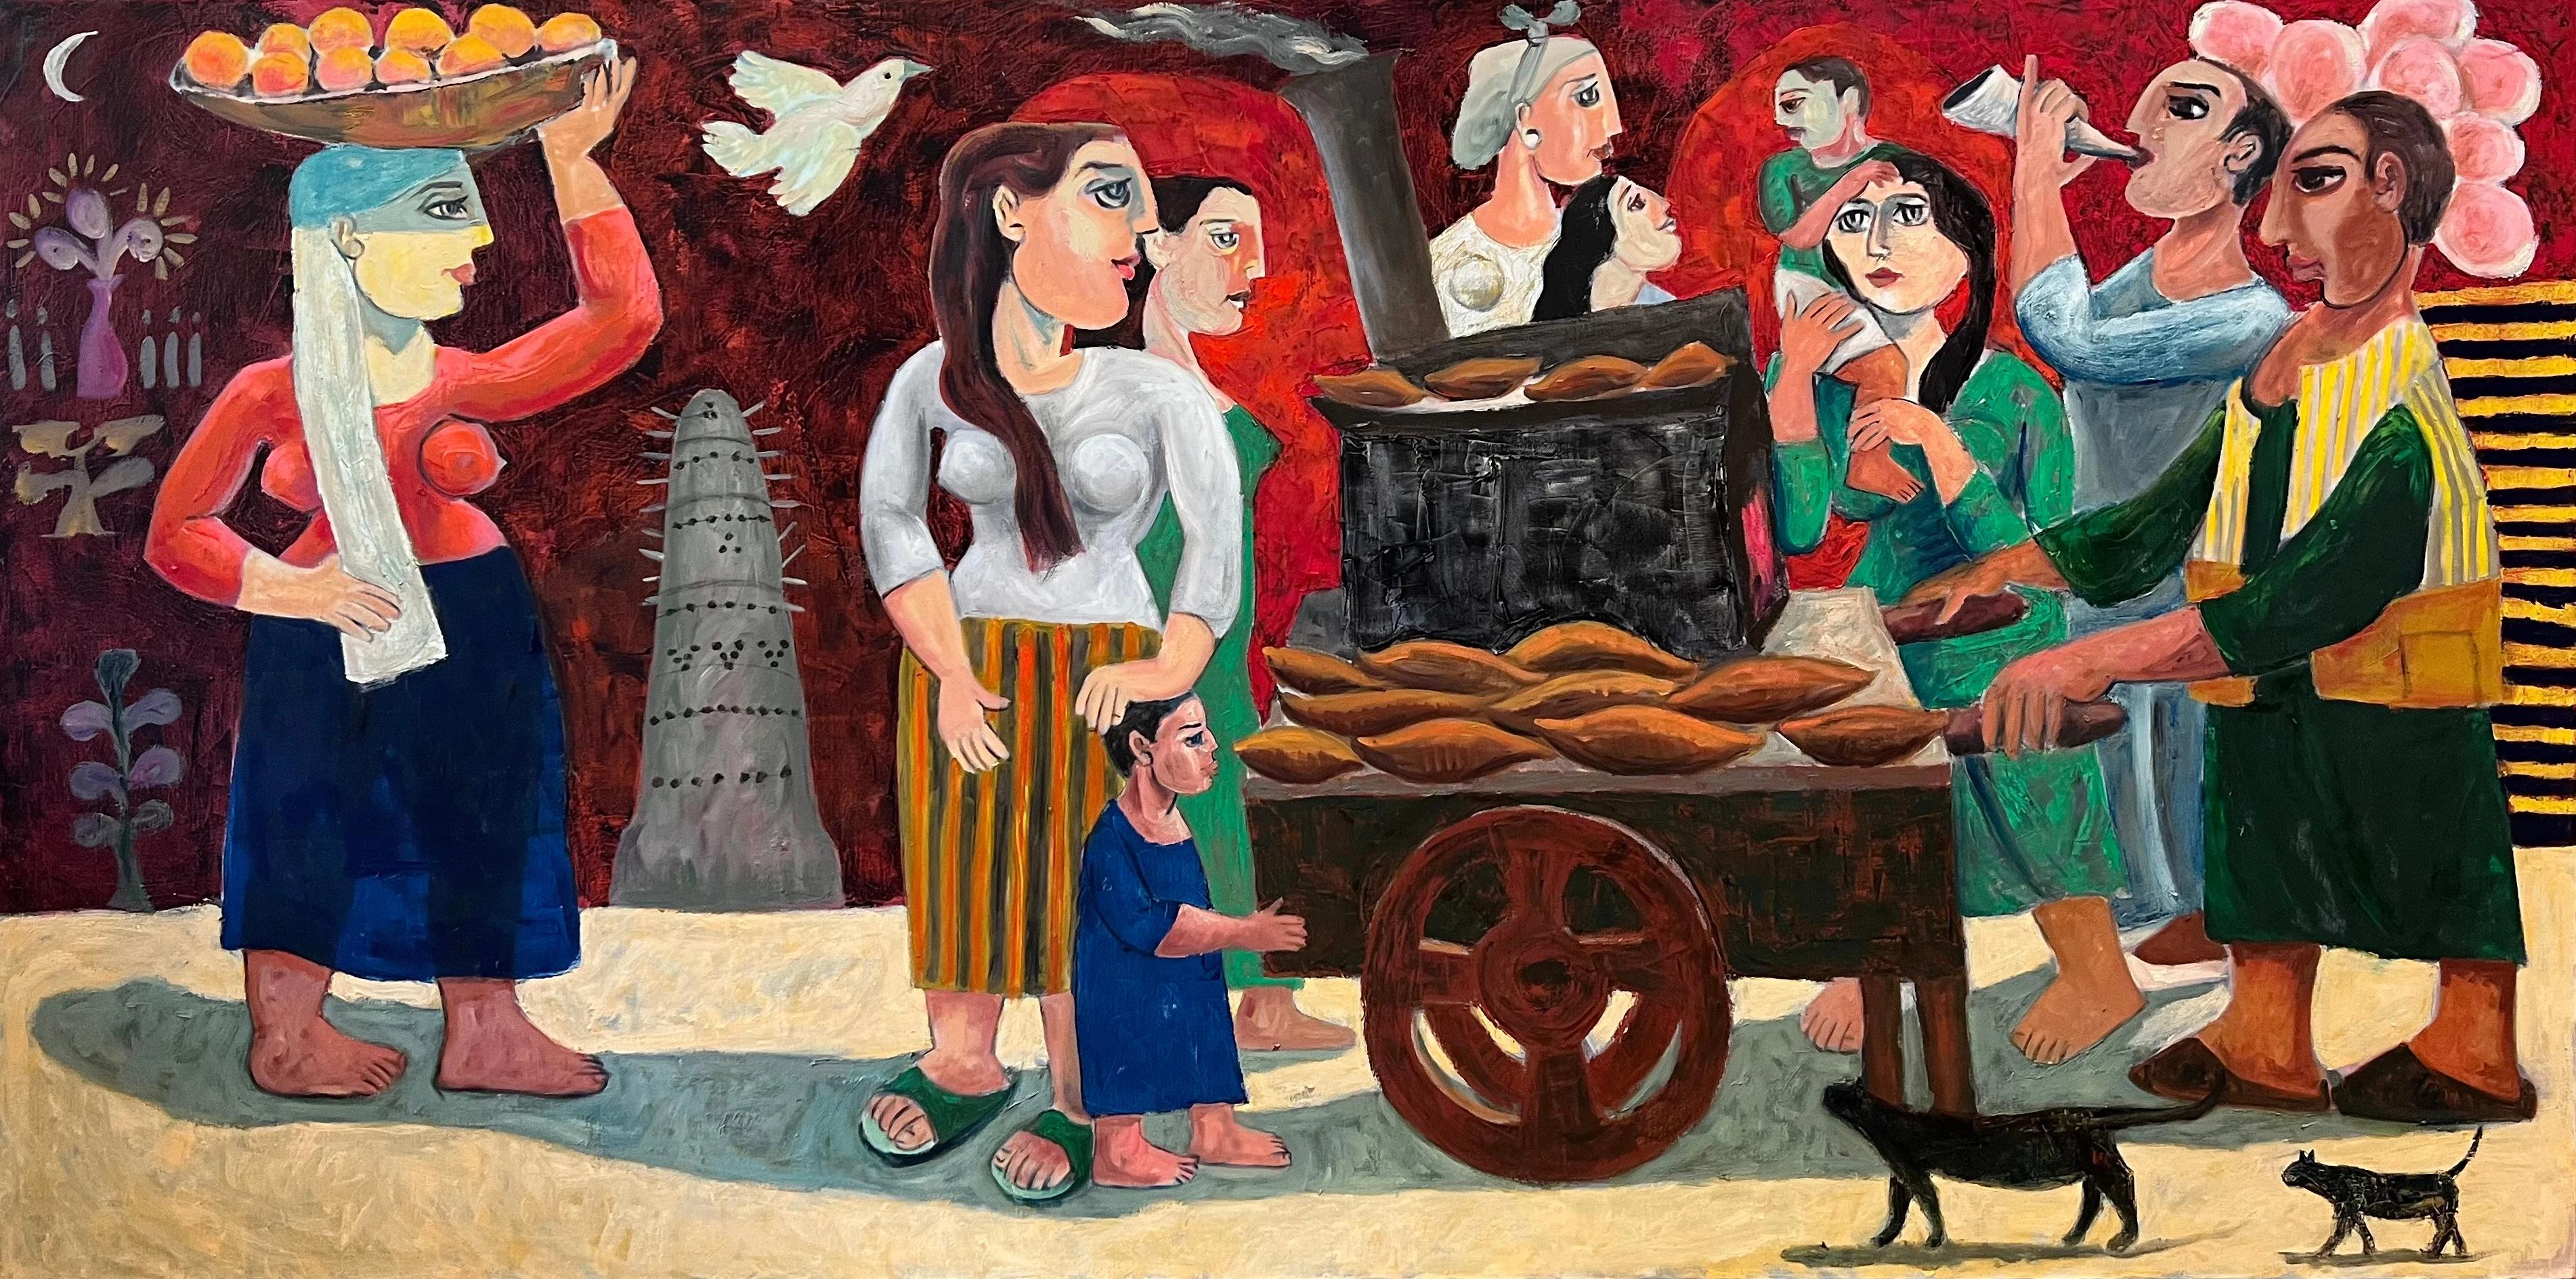 "Marché du vendredi" Peinture à l'huile 39" x 79" inch par Omar Abdel Zaher


Abdel Zaher est diplômé de l'Academy of Fine Arts d'Helwan. Il peint depuis trois décennies et a notamment participé à diverses expositions collectives, dont le Salon El